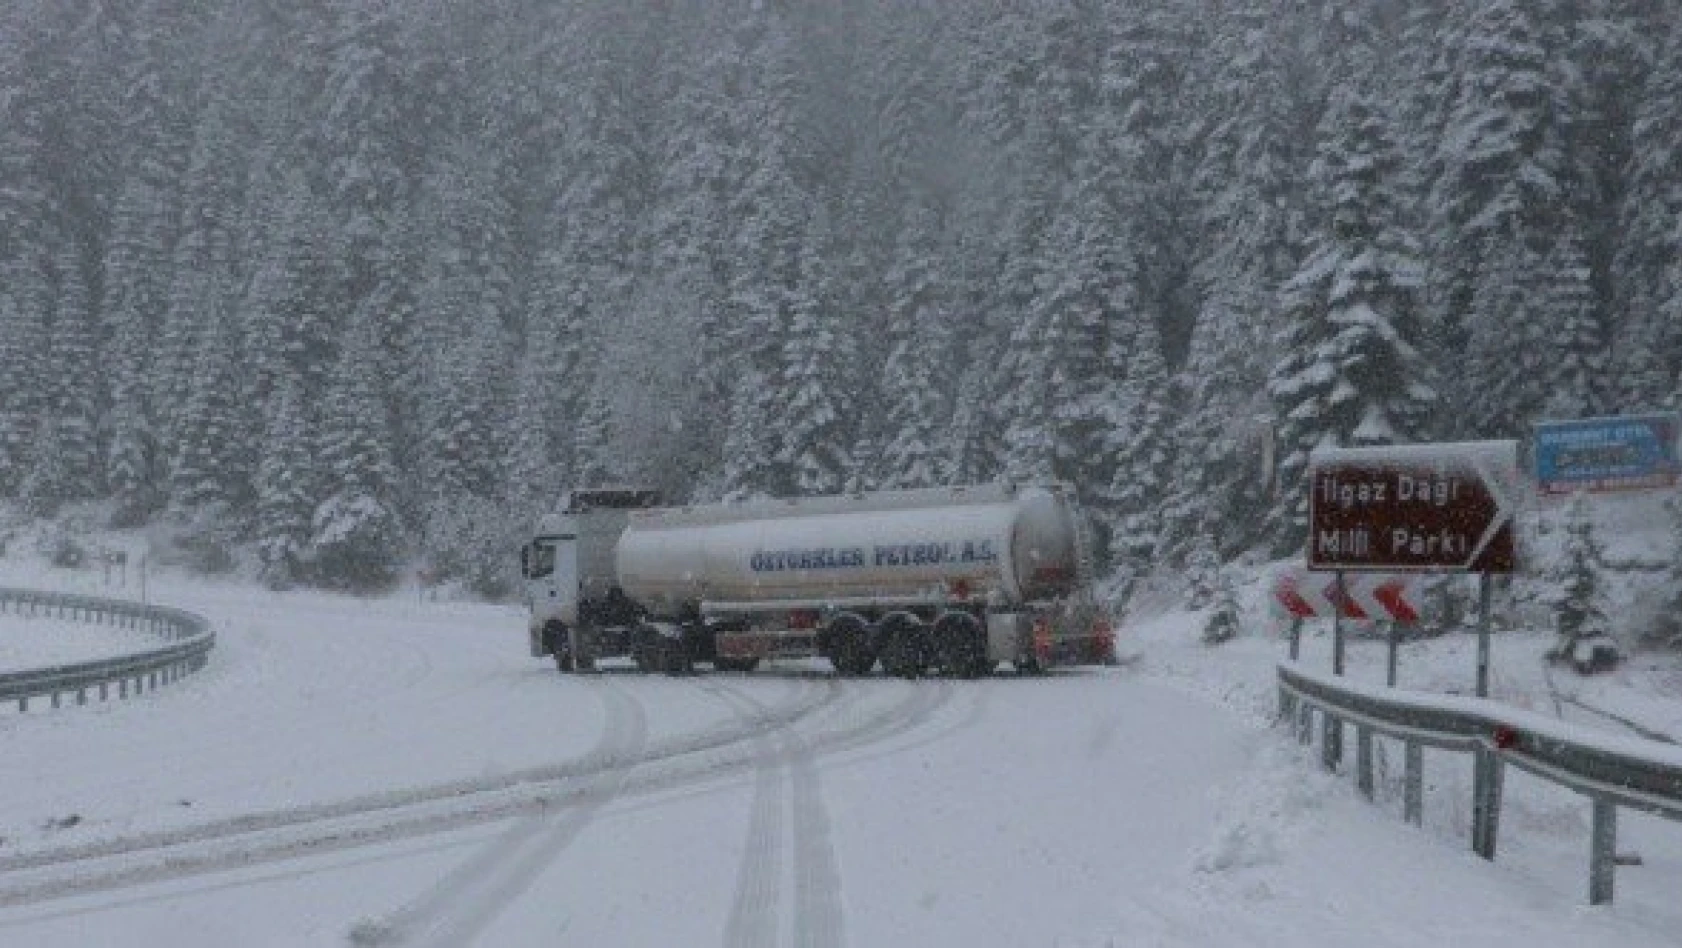 Ilgaz Dağı'nda kar nedeniyle ulaşım güçlükle sağlanıyor